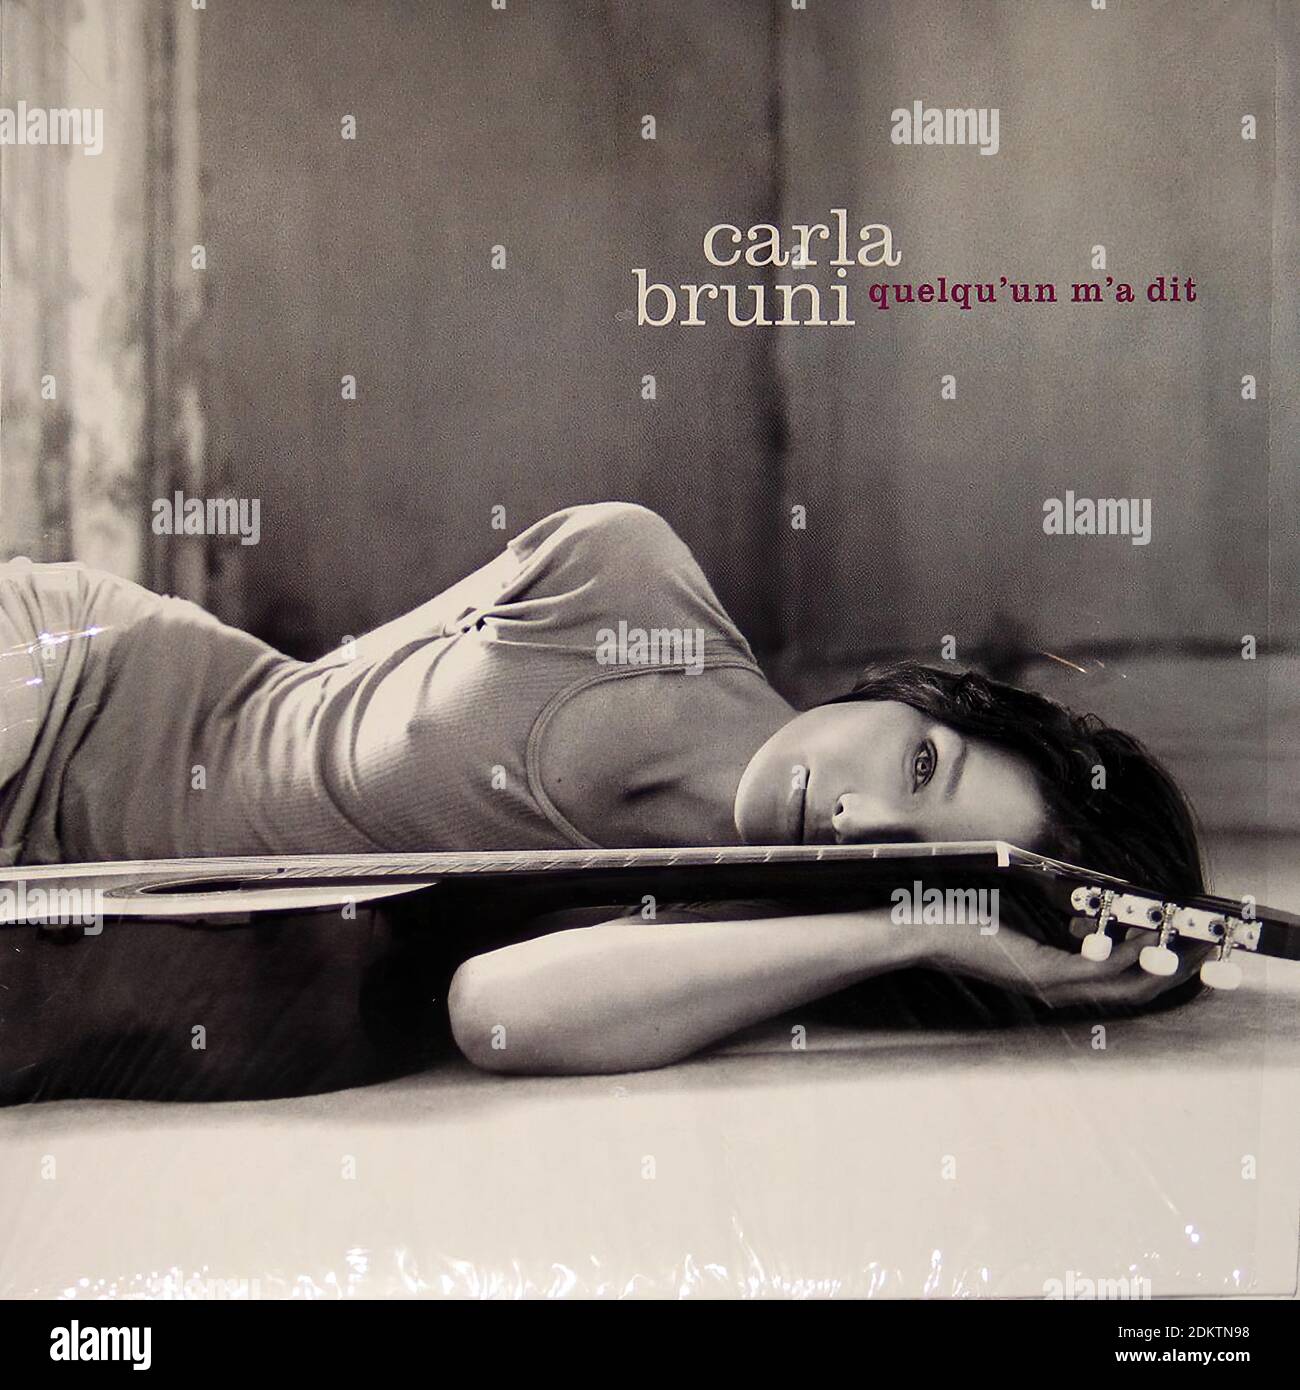 CARLA BRUNI QUELQU'UN M'A DIT   10  Limited Edition  - Vintage Vinyl Record Cover Stock Photo